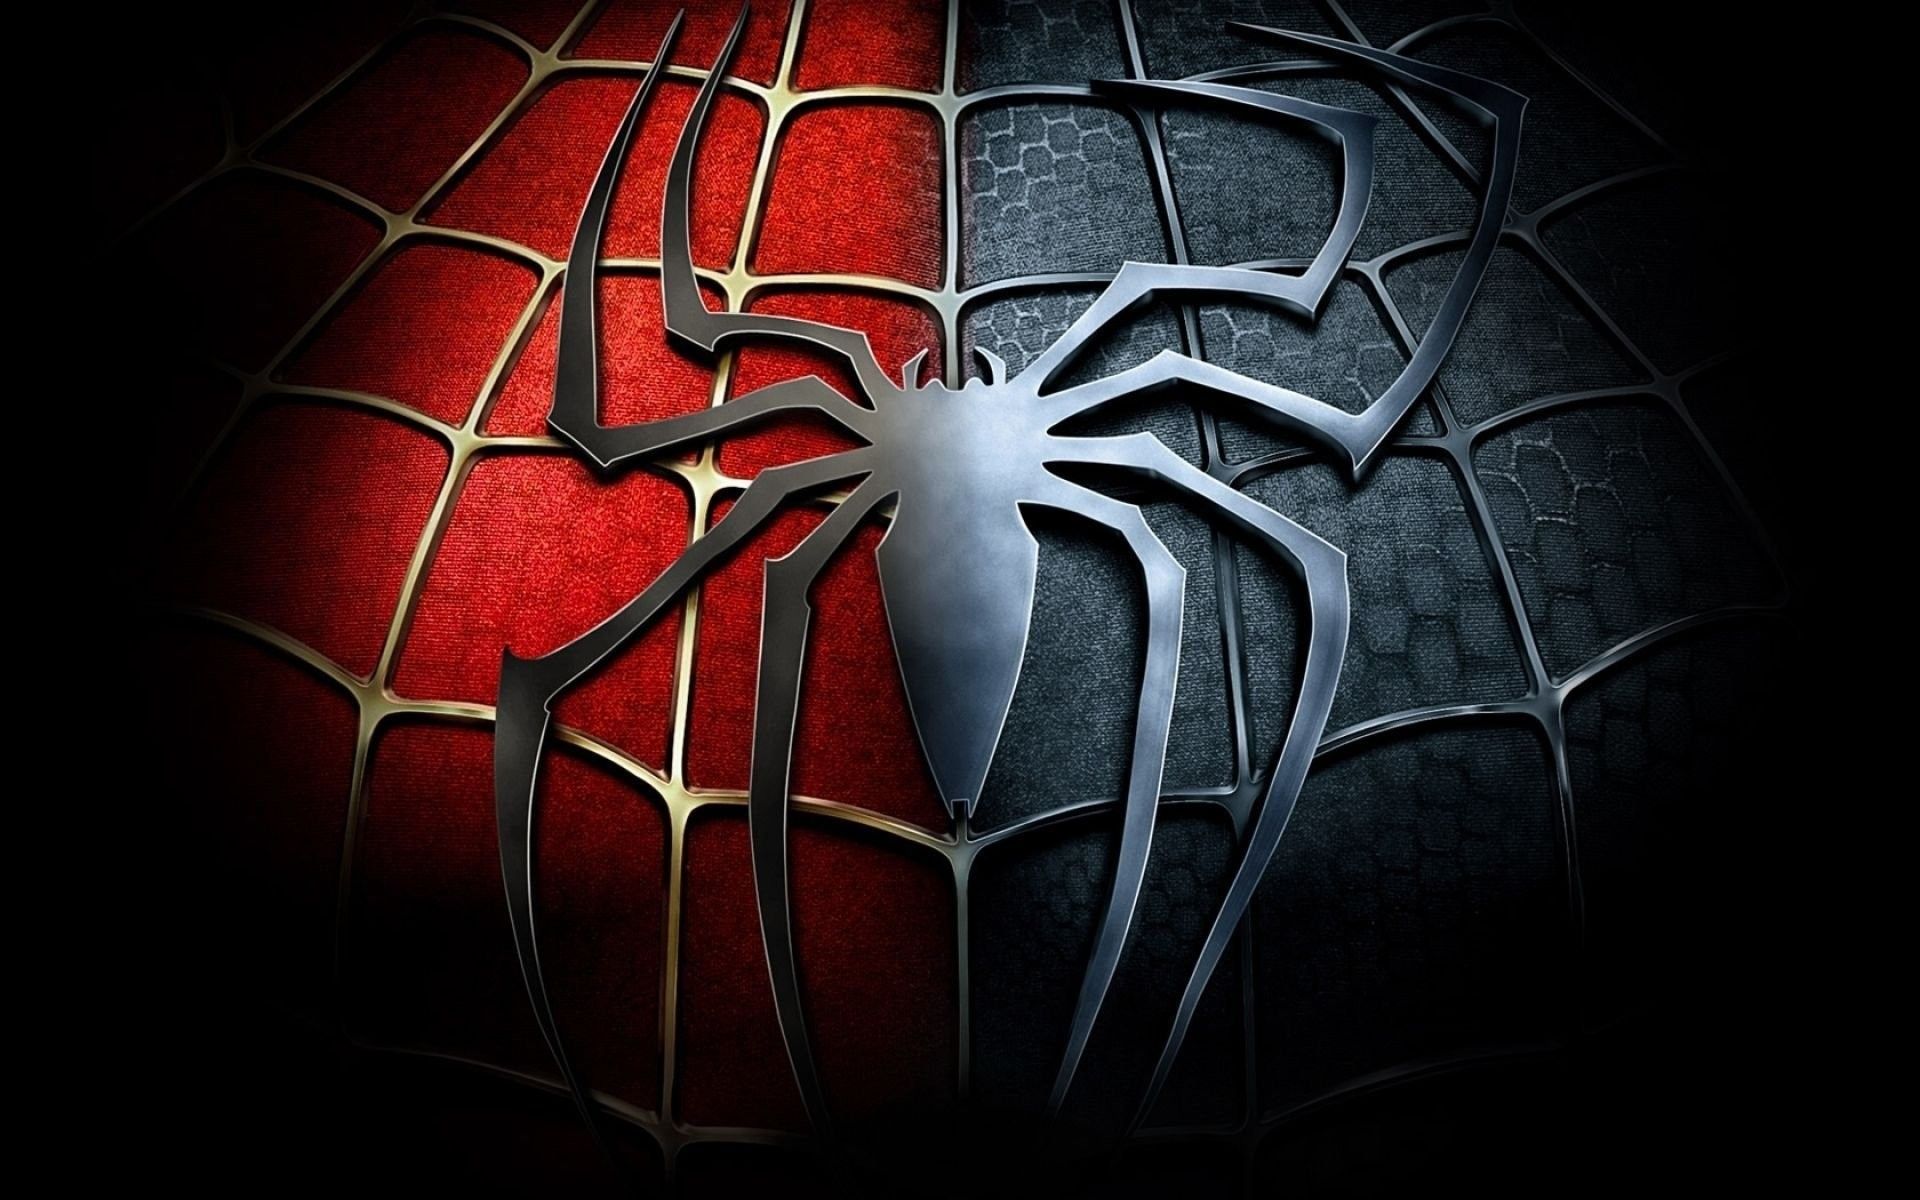 100 Venom Spider Man Wallpapers  Wallpaperscom